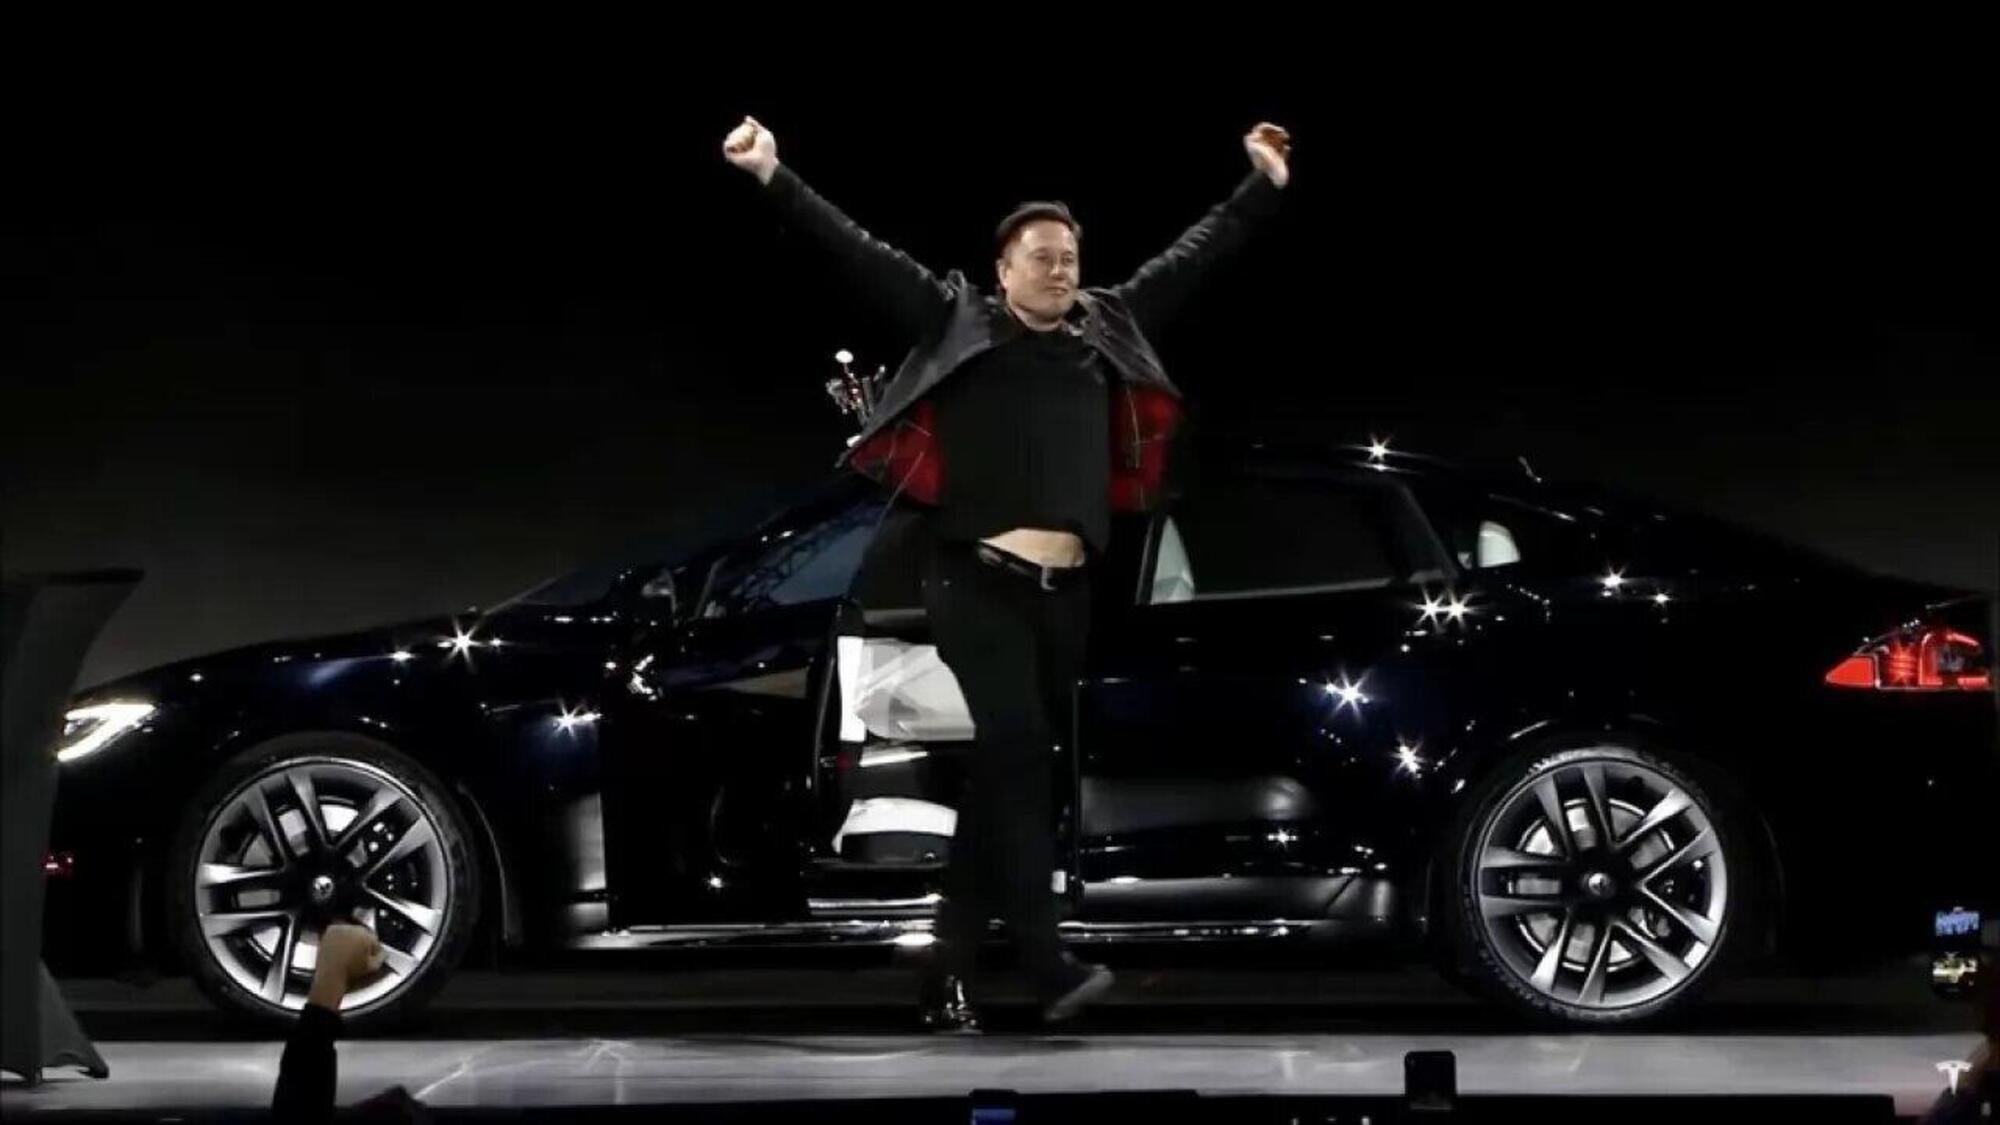 La gerarchia delle auto elettriche: Musk leader con Tesla, Volkswagen e SAIC-GM-Wuling subito dietro. Stellantis e Bmw inseguono 